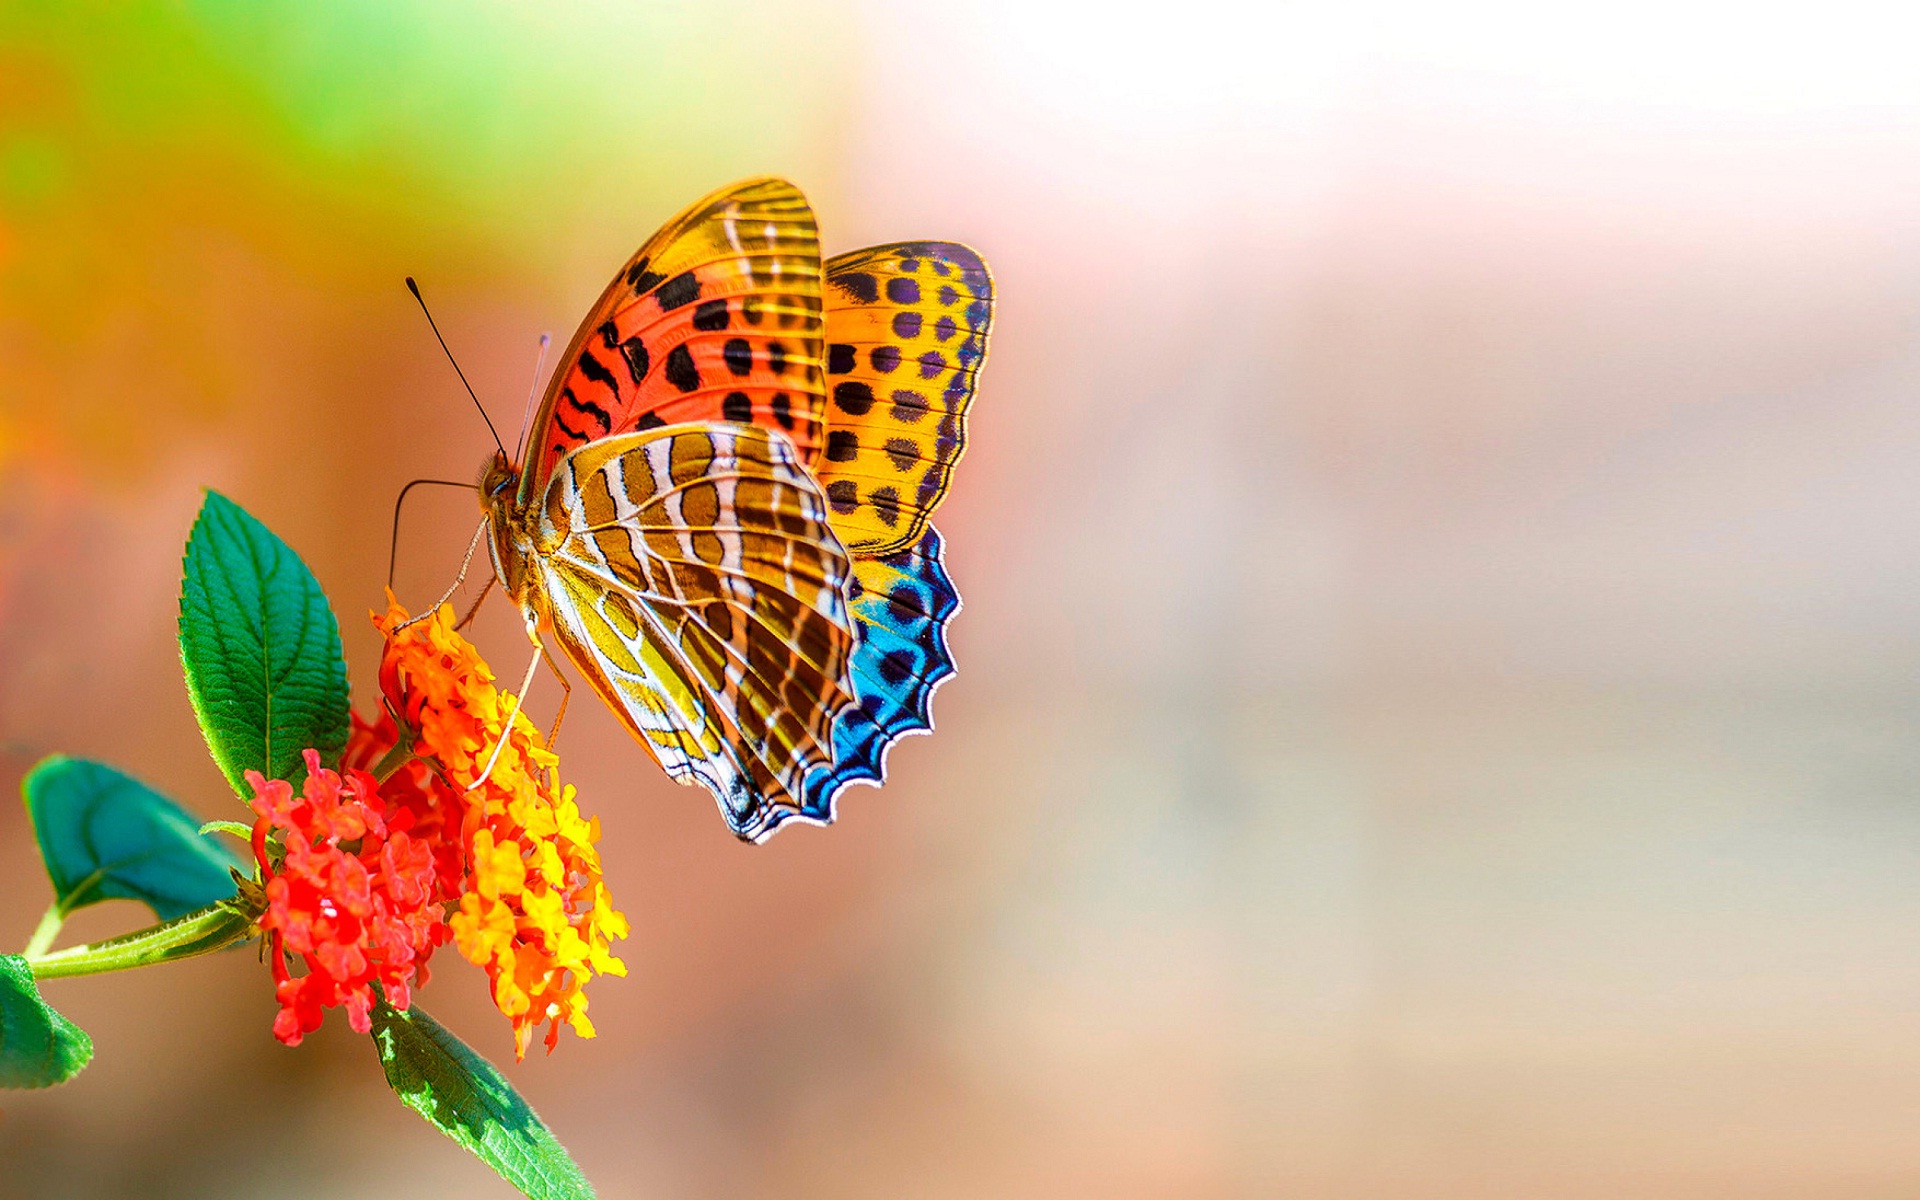 fond d'écran kupu kupu,papillon,papillons et papillons,insecte,macro photographie,invertébré